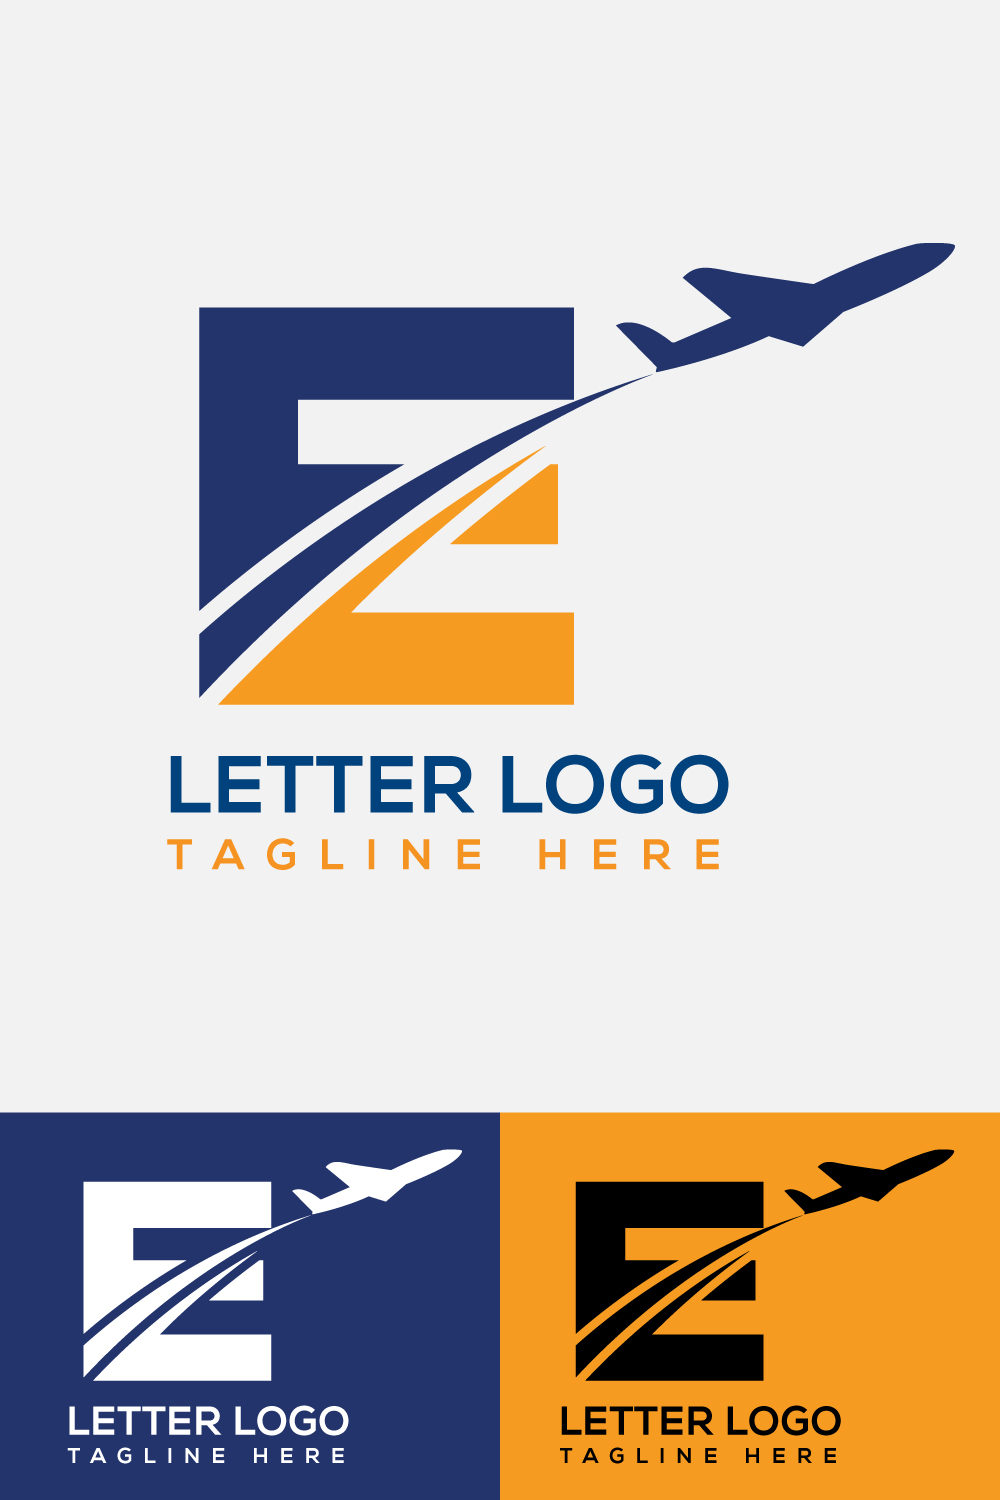 Letter E Airline Logo Design pinterest image.